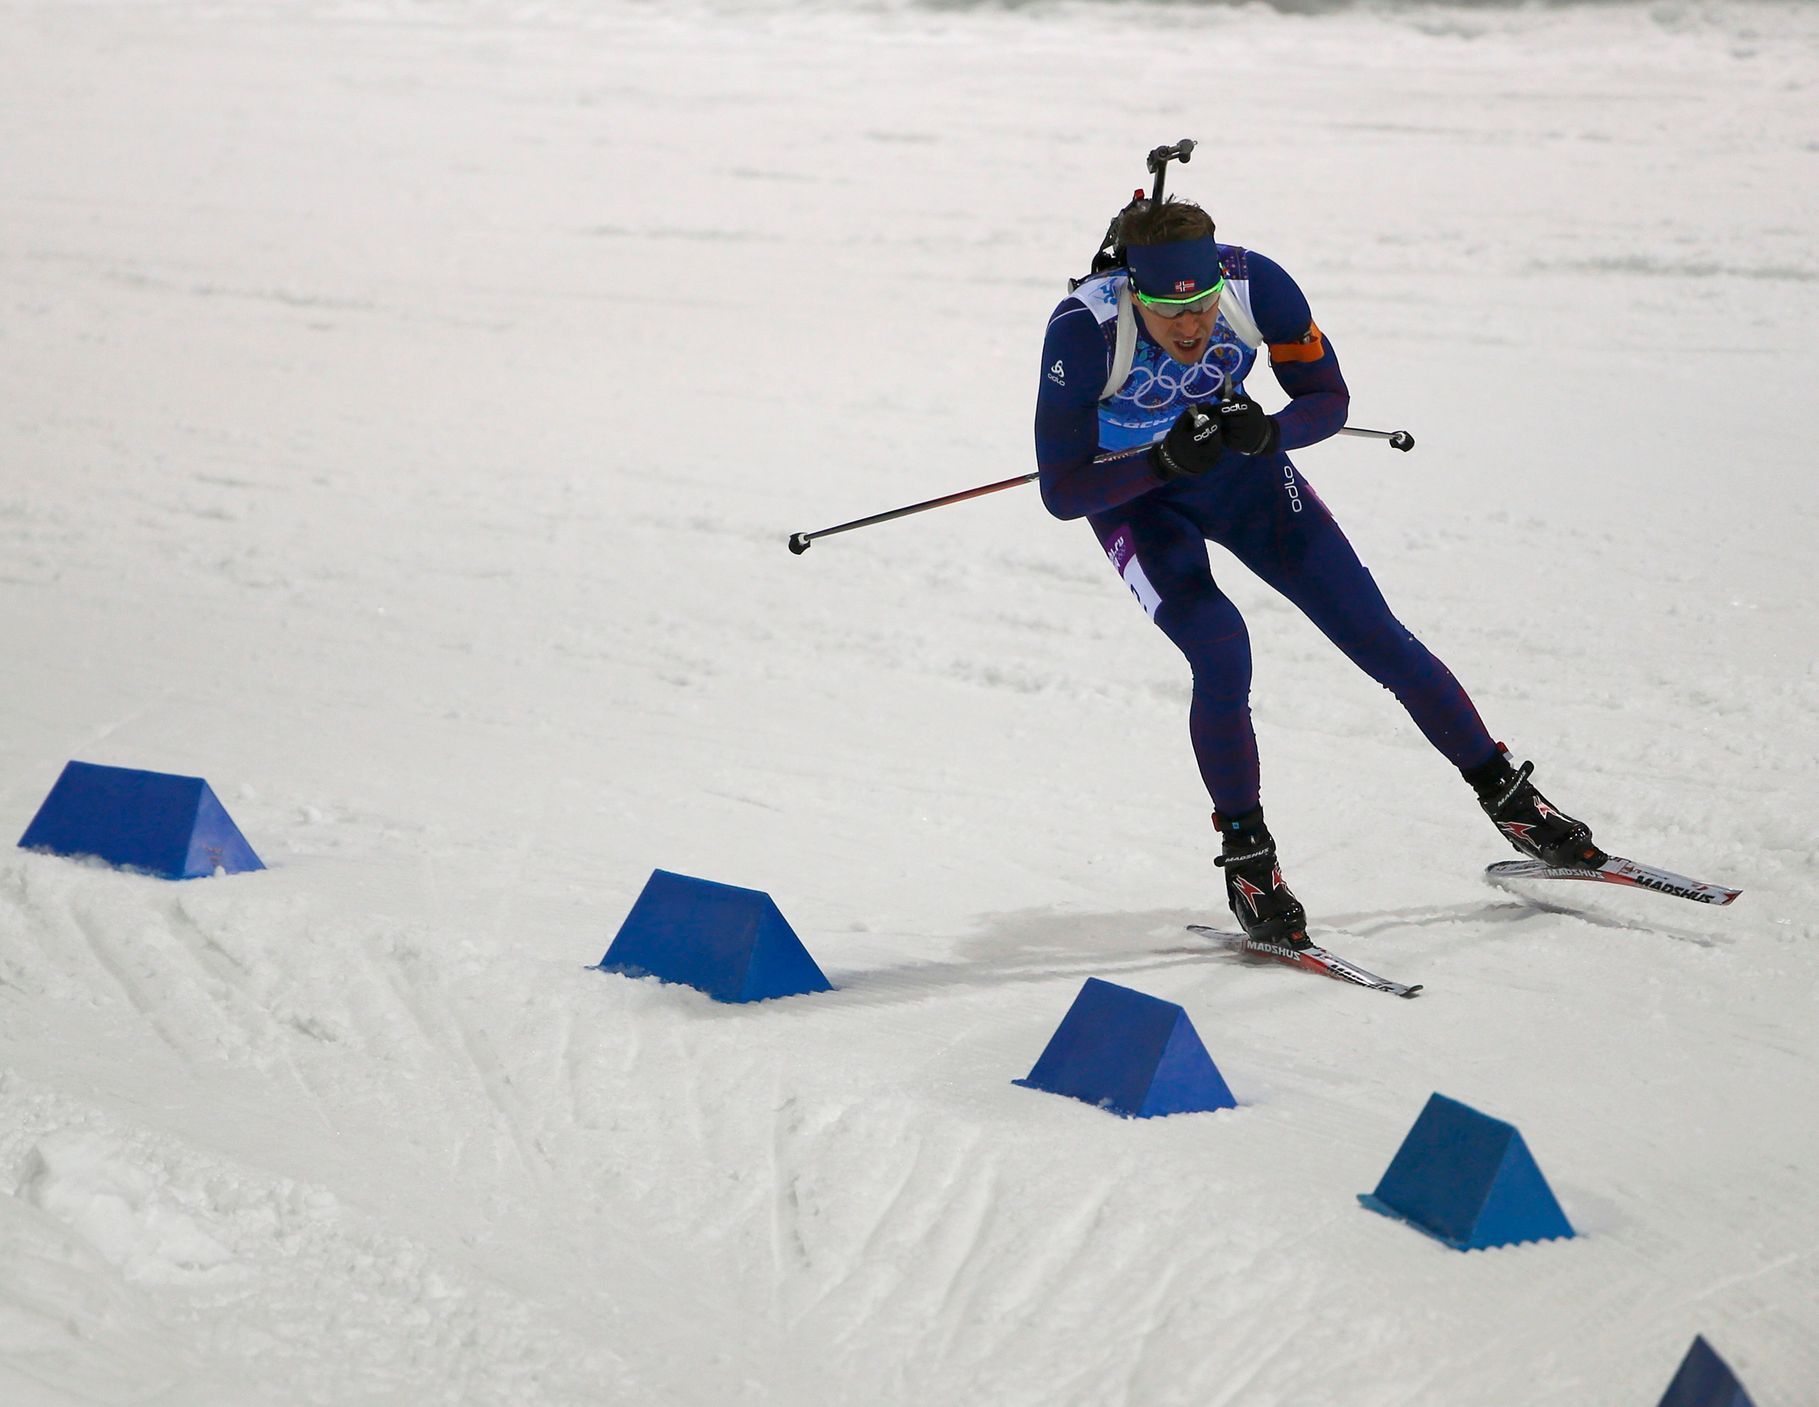 Soči 2014, biatlon, smíšená štafeta: Emil Hegle Svendsen, Norsko